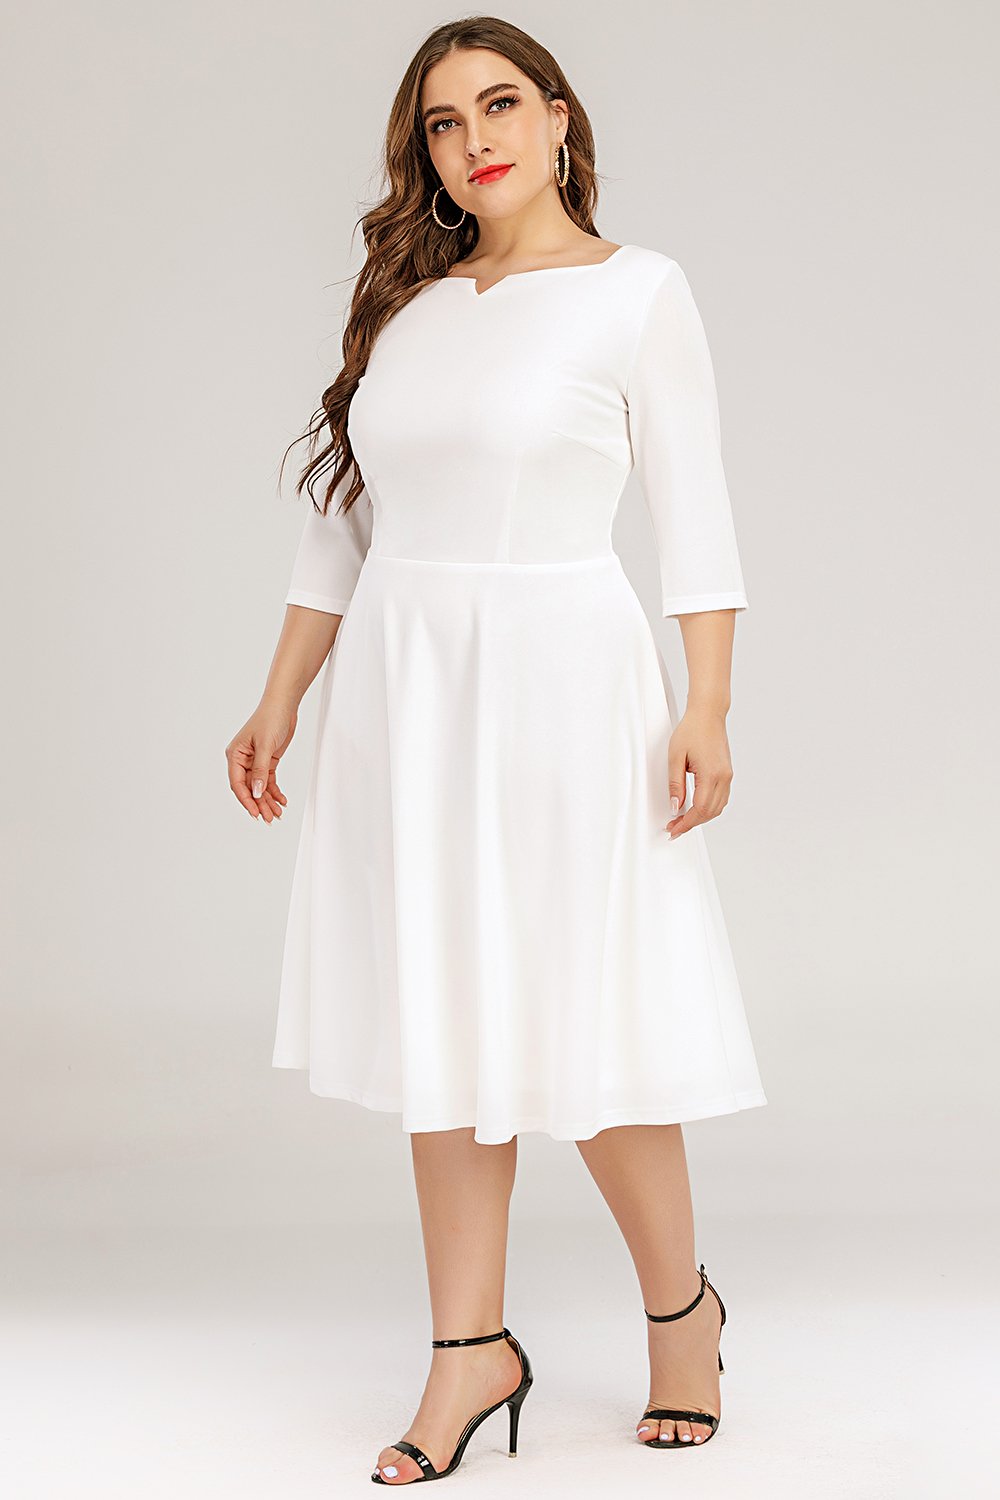 Plus Size White Formal Dress